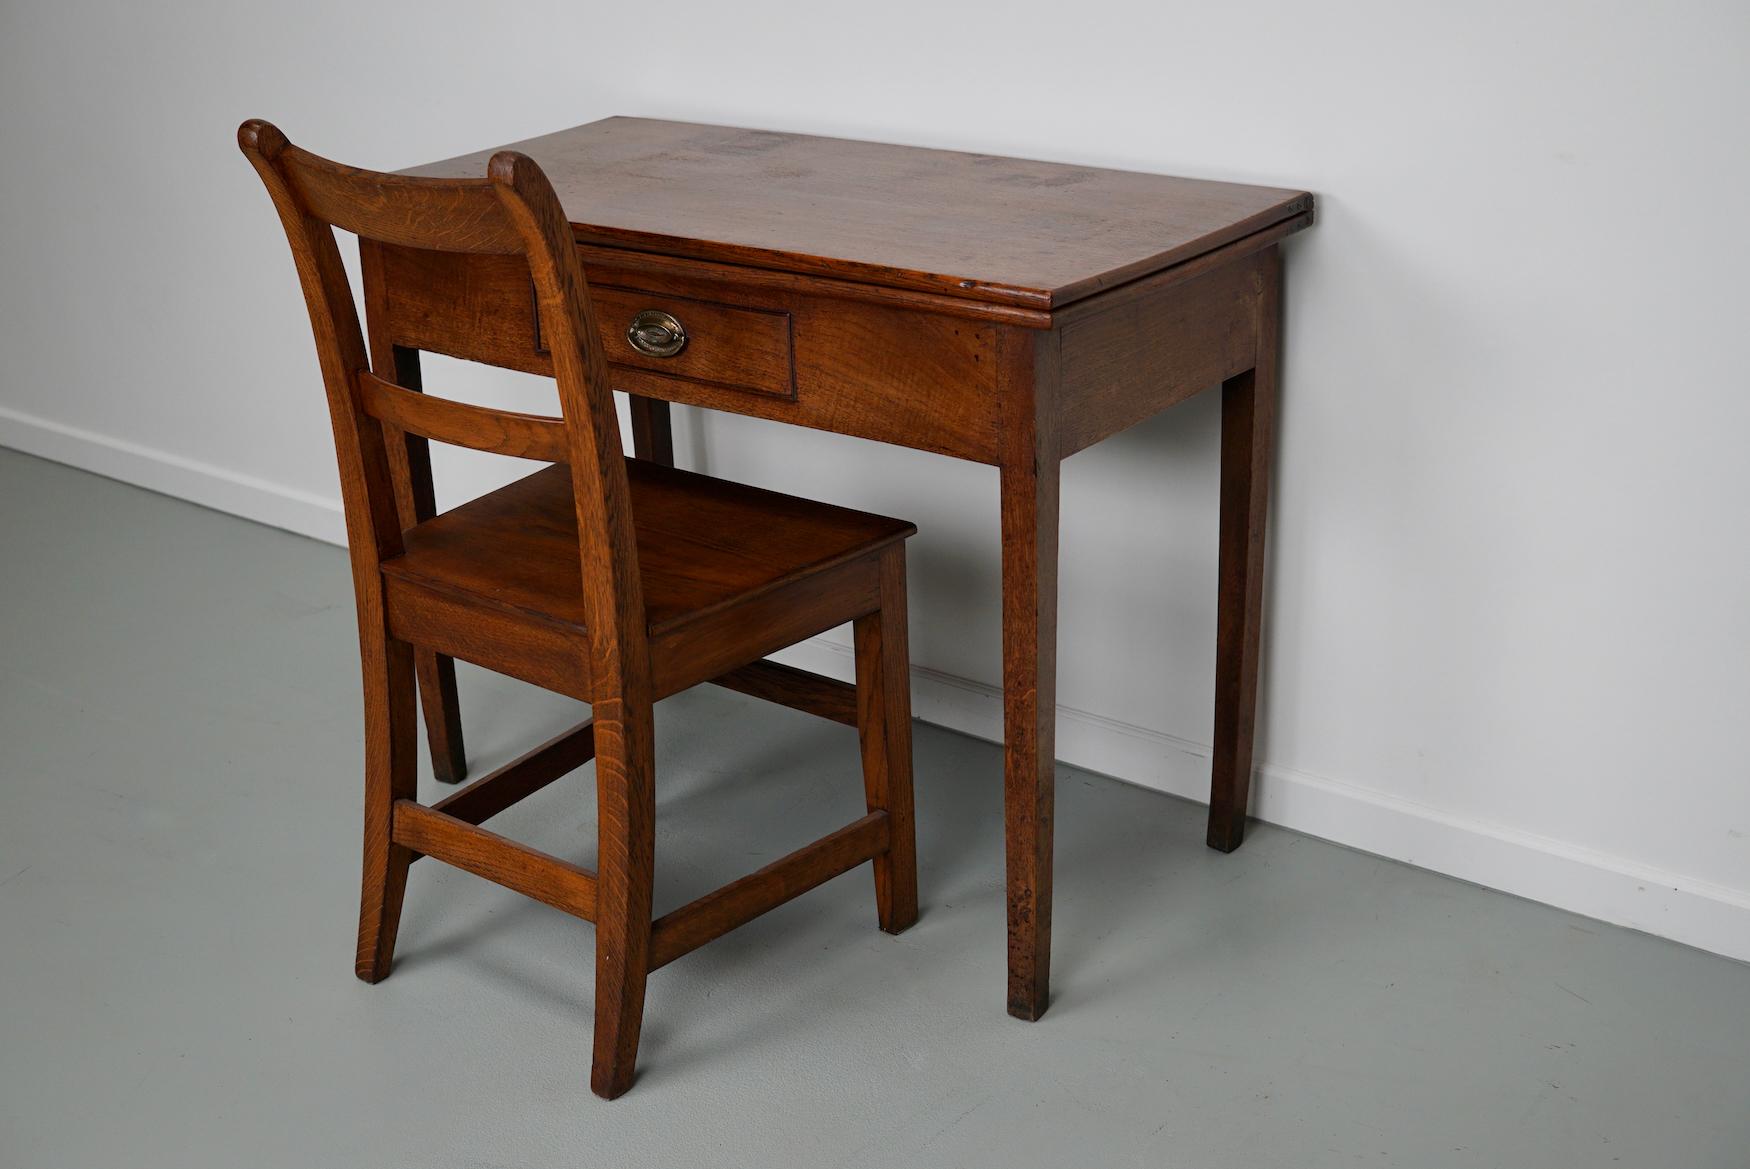 Cette table à écrire a été conçue et fabriquée en Angleterre vers 1800. Elle peut être pliée en une grande table carrée. Il est accompagné d'une belle chaise ancienne en chêne qui a la même couleur / finition. 